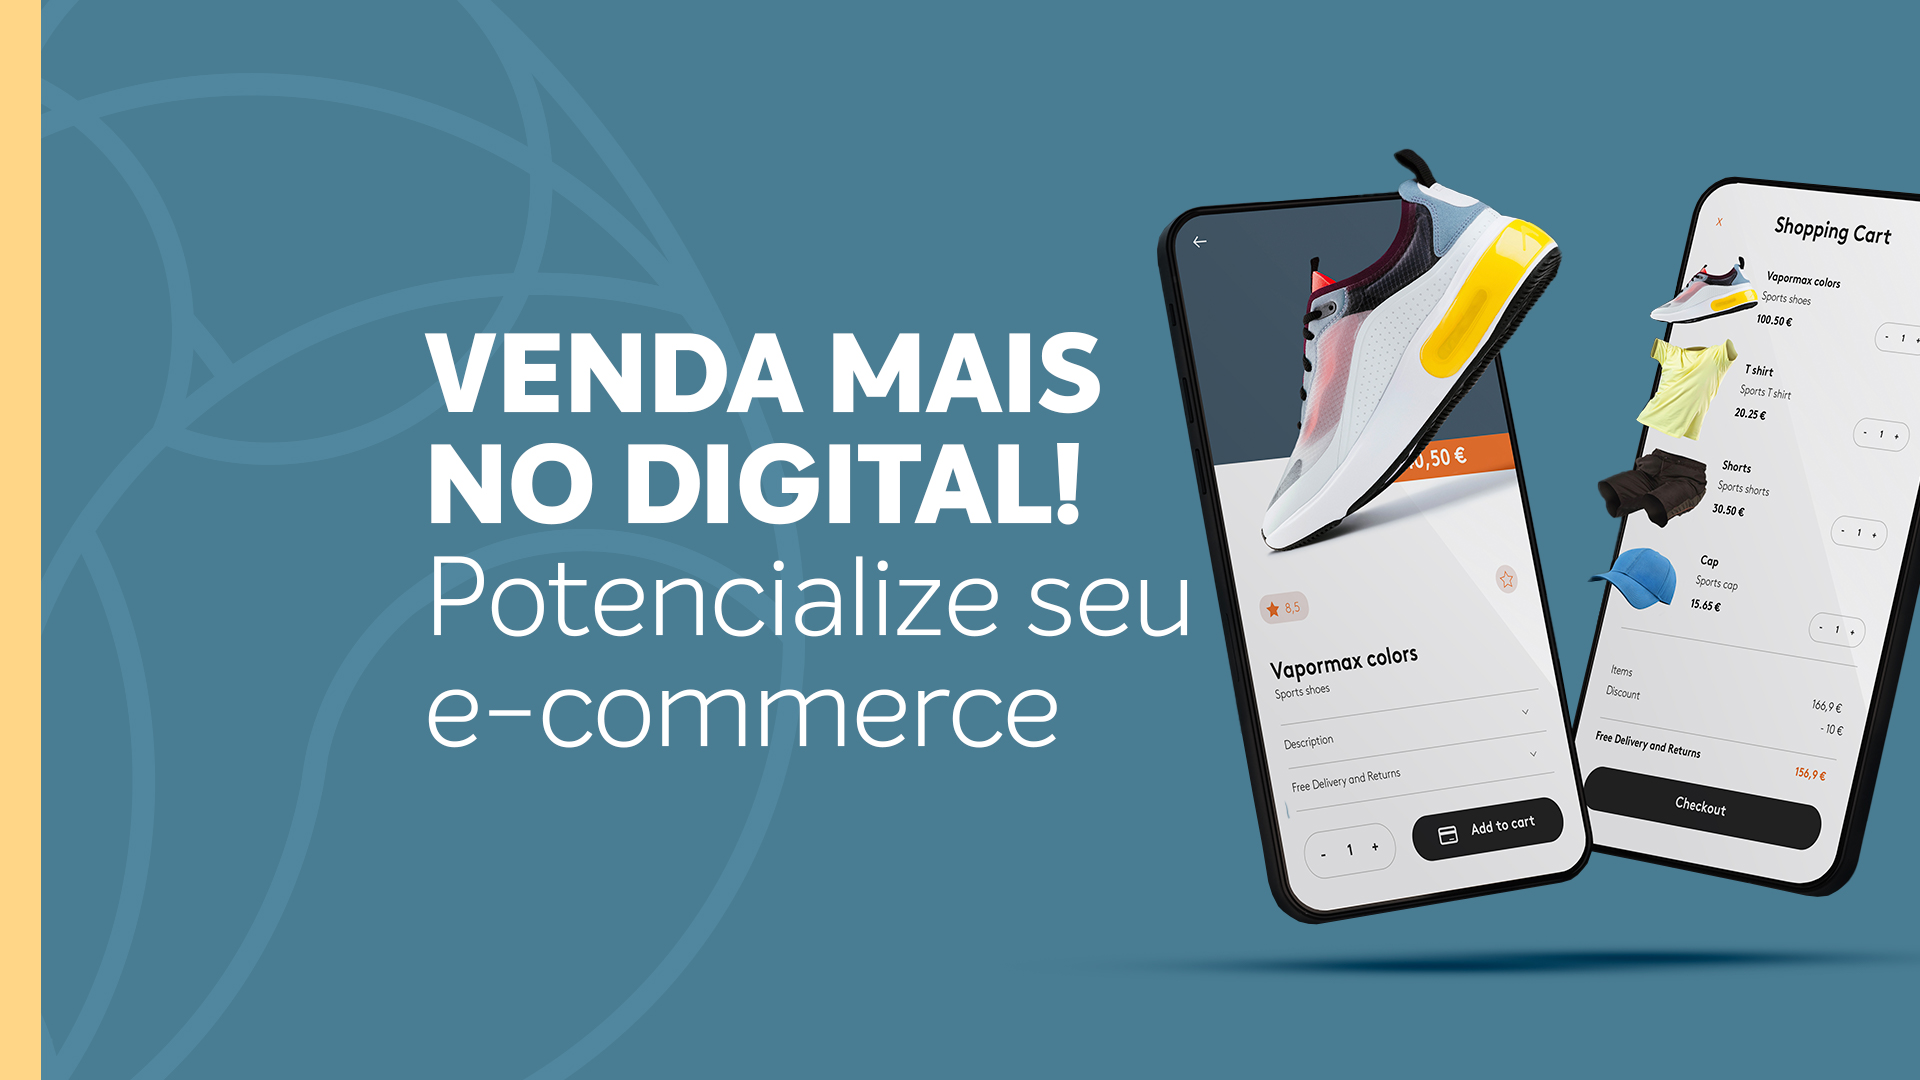 You are currently viewing Venda mais no digital! Potencialize seu e-commerce